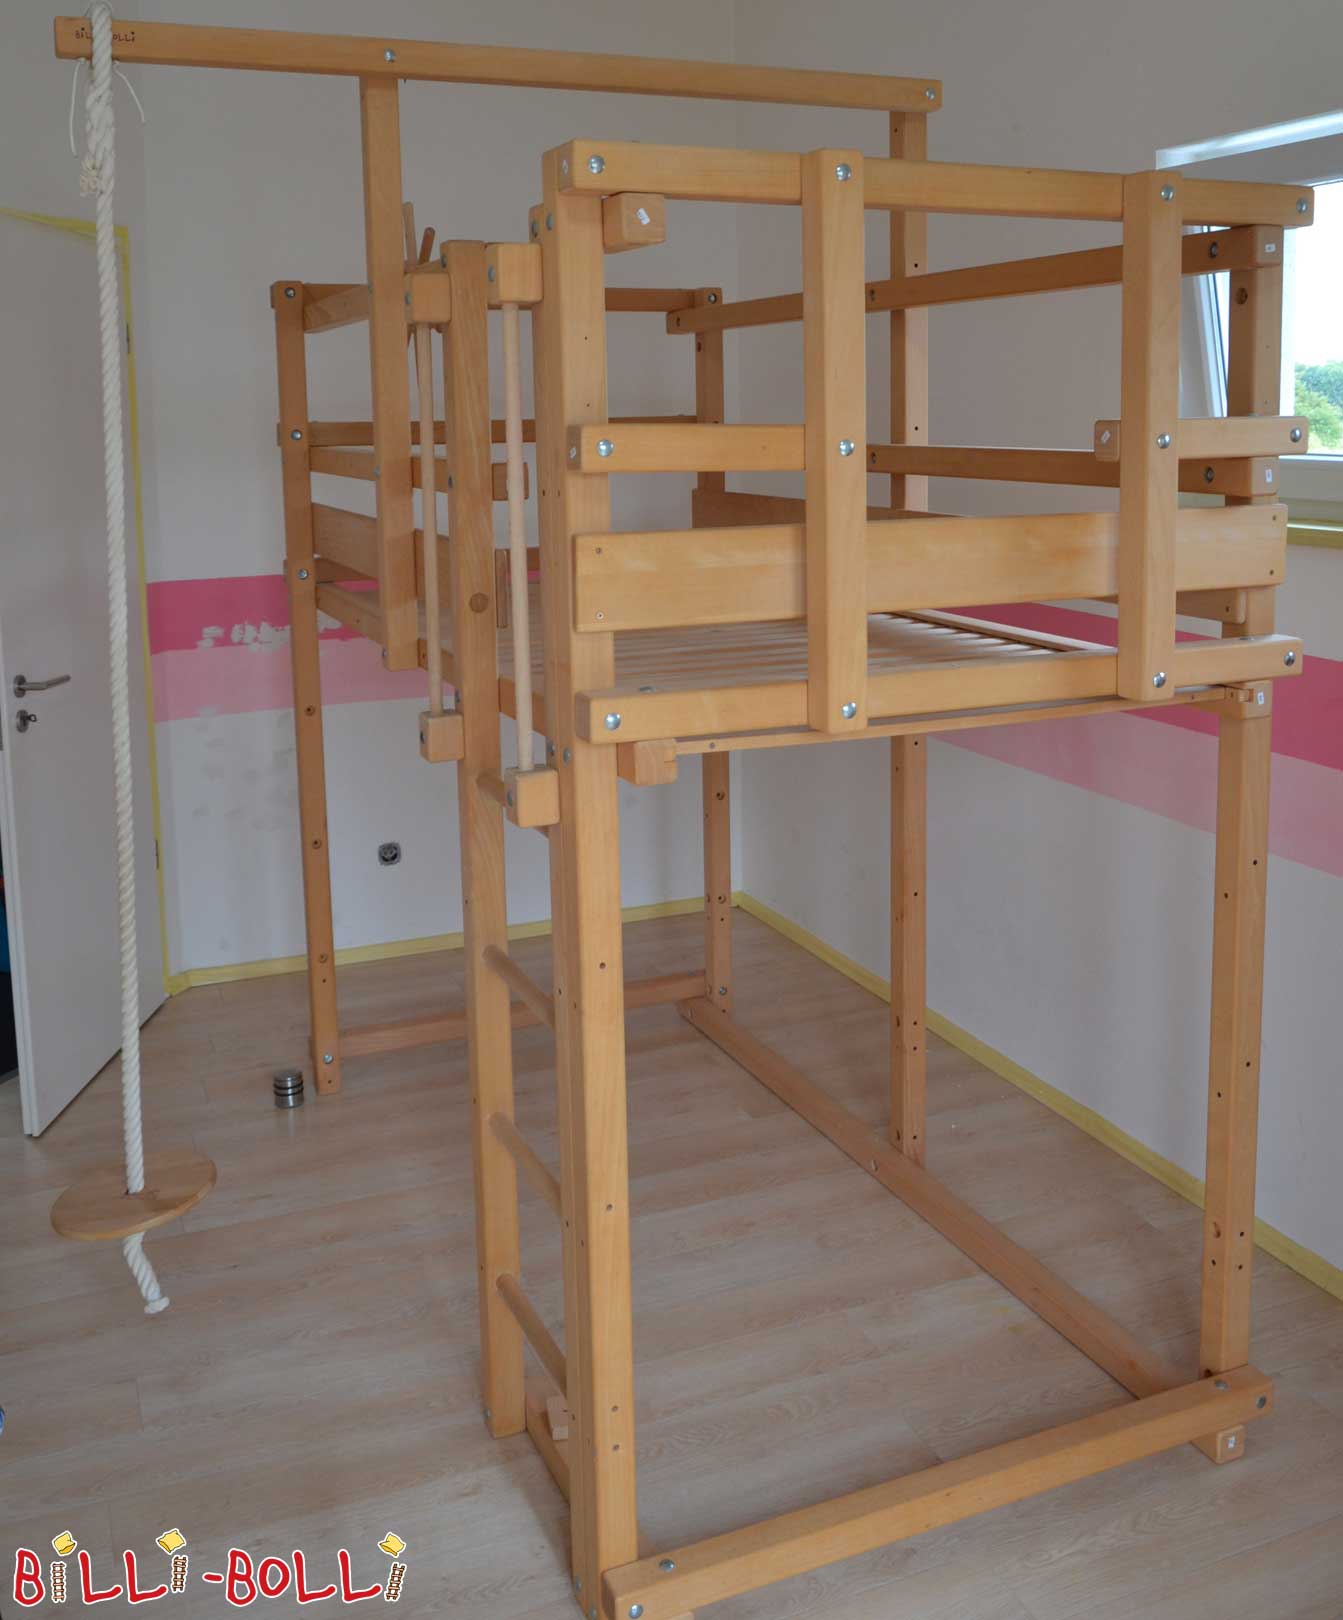 मचान बिस्तर जो बच्चे के साथ बढ़ता है, 100 x 200 सेमी, अनुपचारित बीच (कोटि: मचान बिस्तर का इस्तेमाल किया)